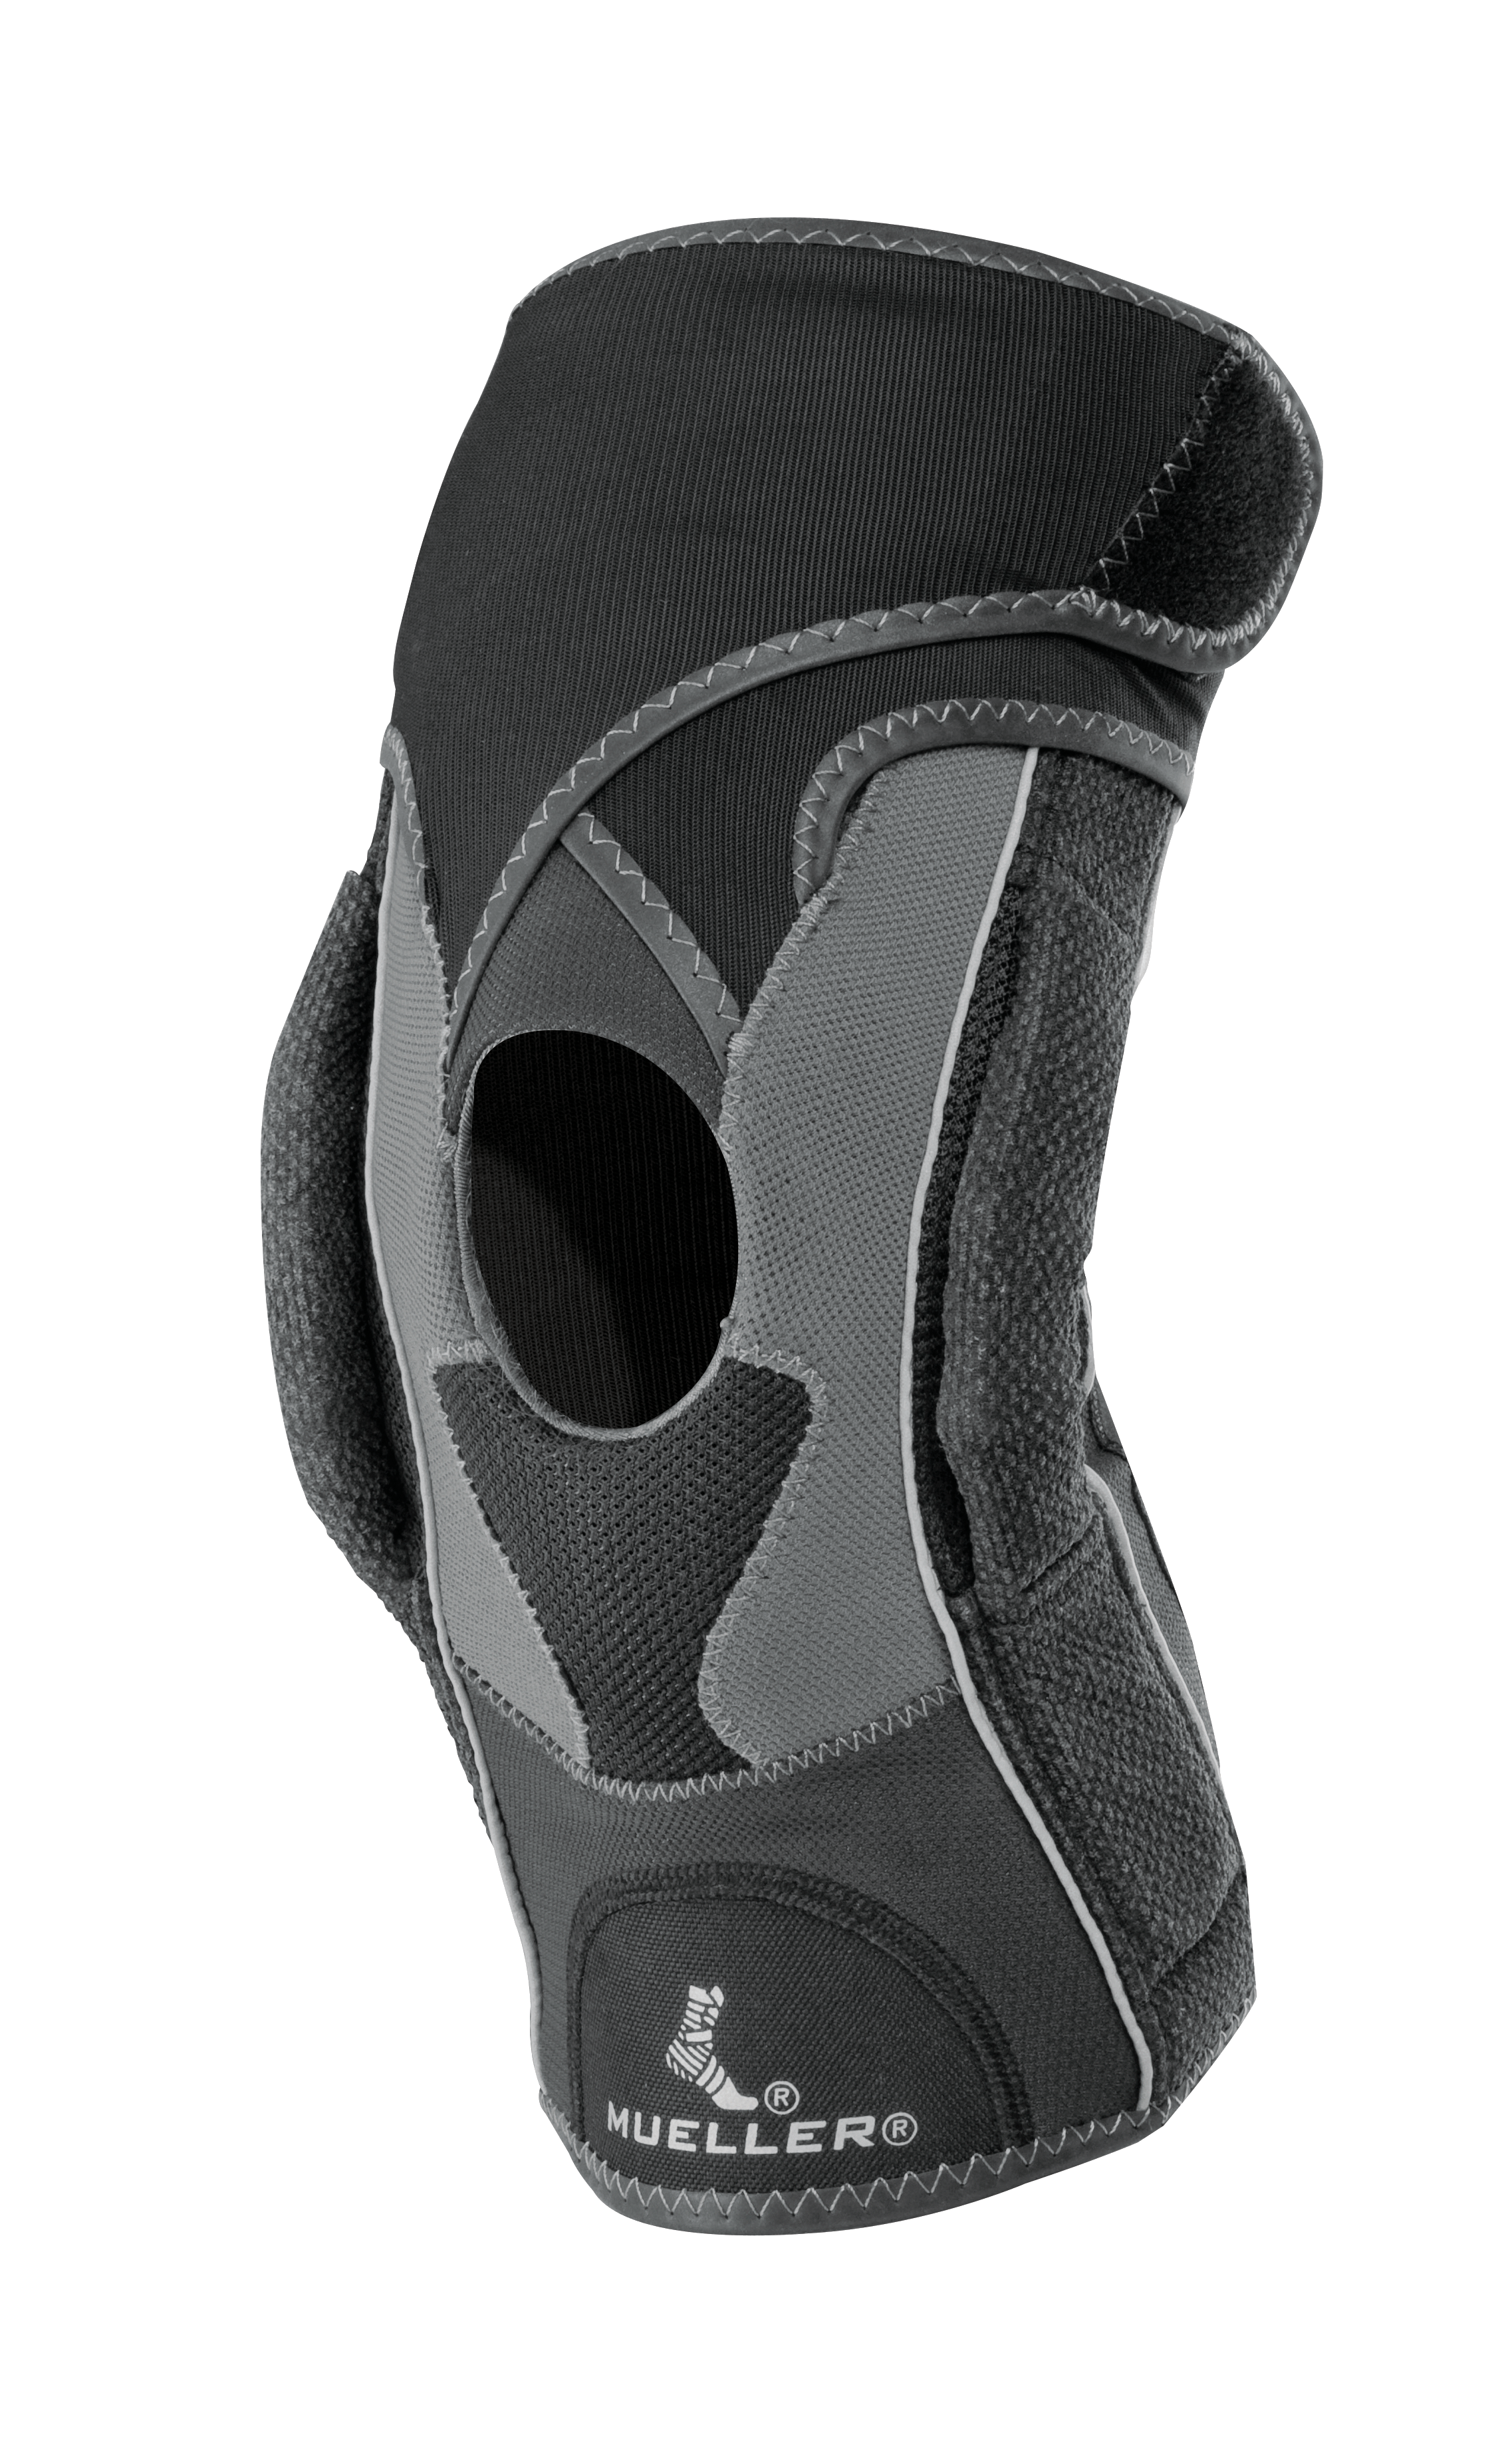 Mueller Hg80 Premium Hinged Knee Brace 5901 Produkt Heroshot